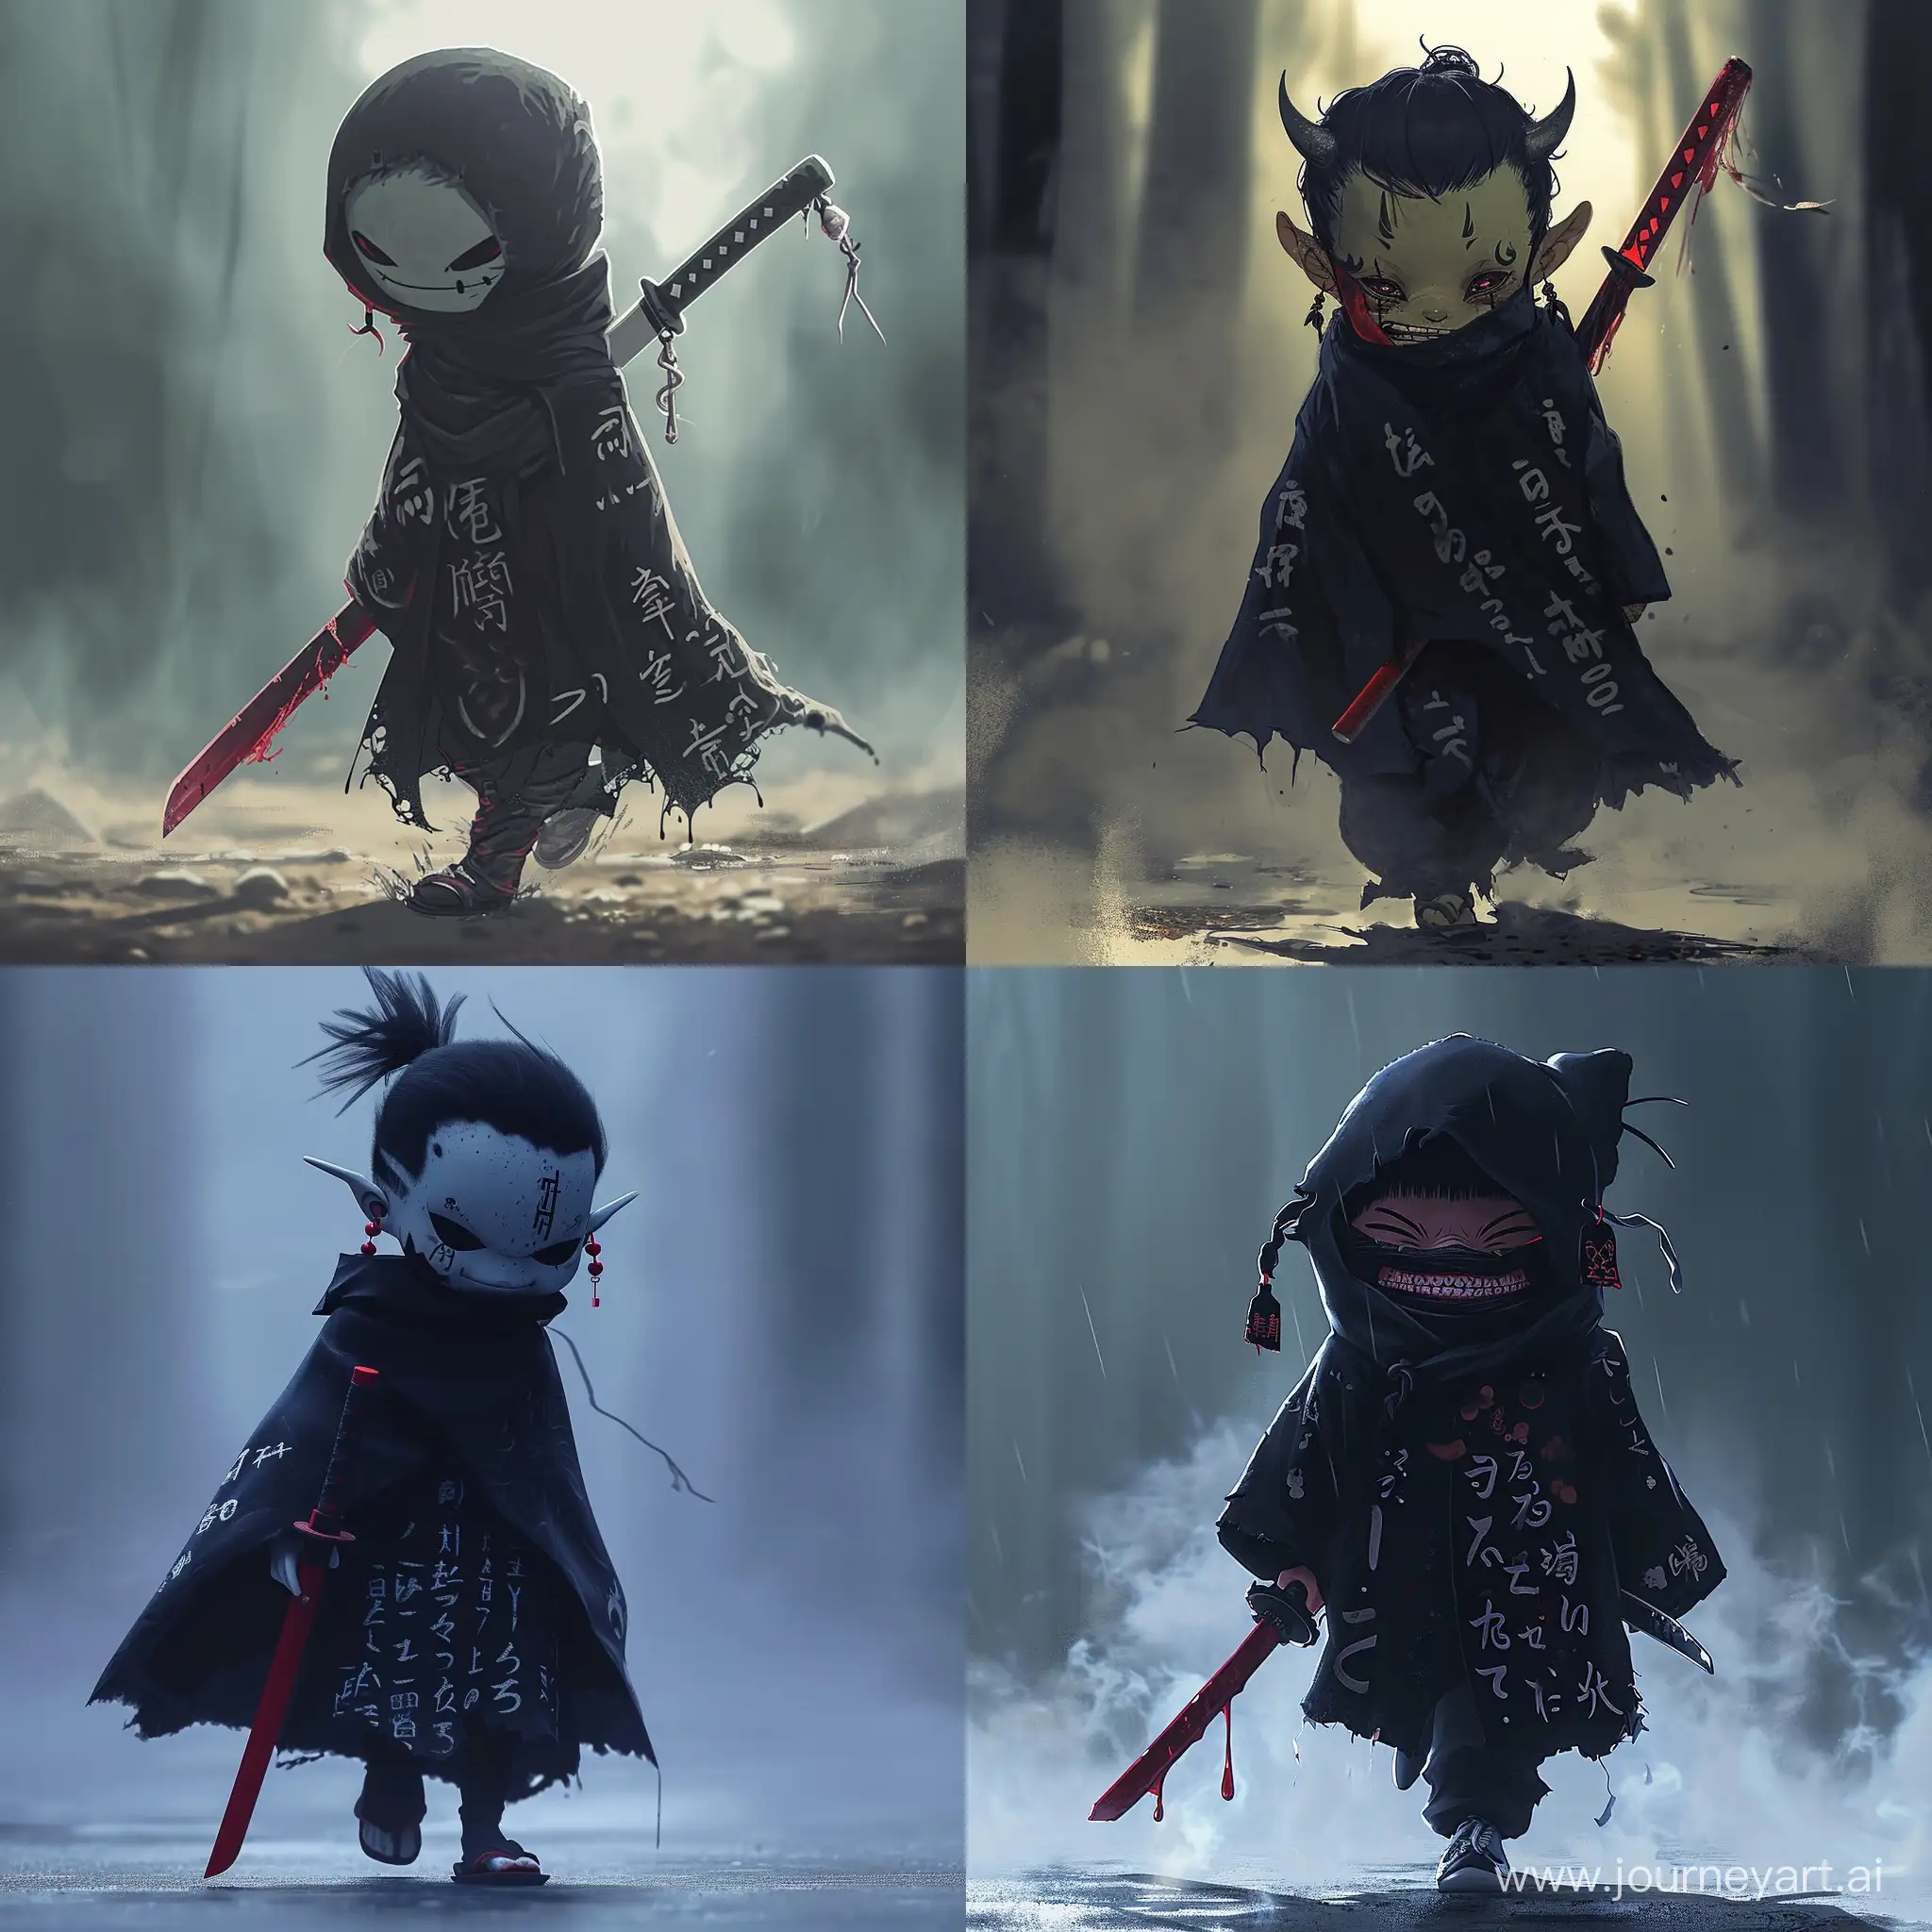 Маленький демон, ходящий под завесой тумана, держа в руках темно красный мечь, черный плащь с японскими надписями, японские серьги на ушах, с закрытым лицом и страшной улыбкой. Anime style